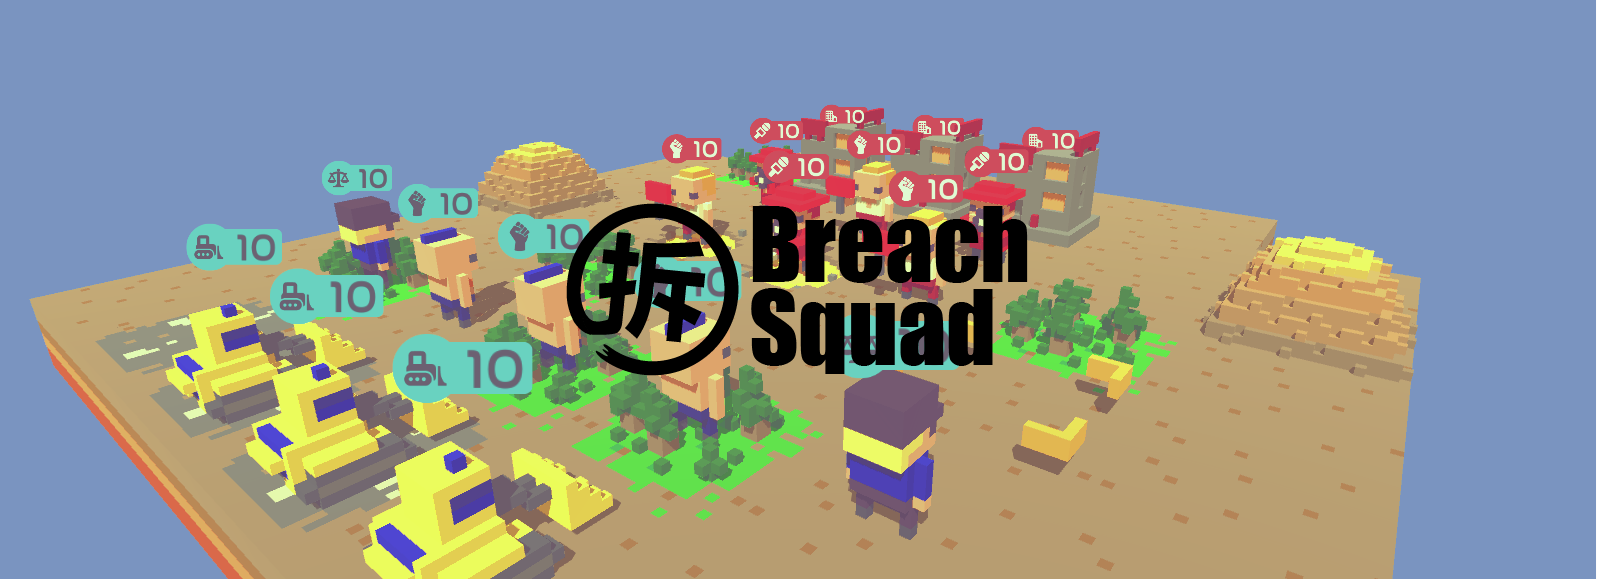 BreachSquad